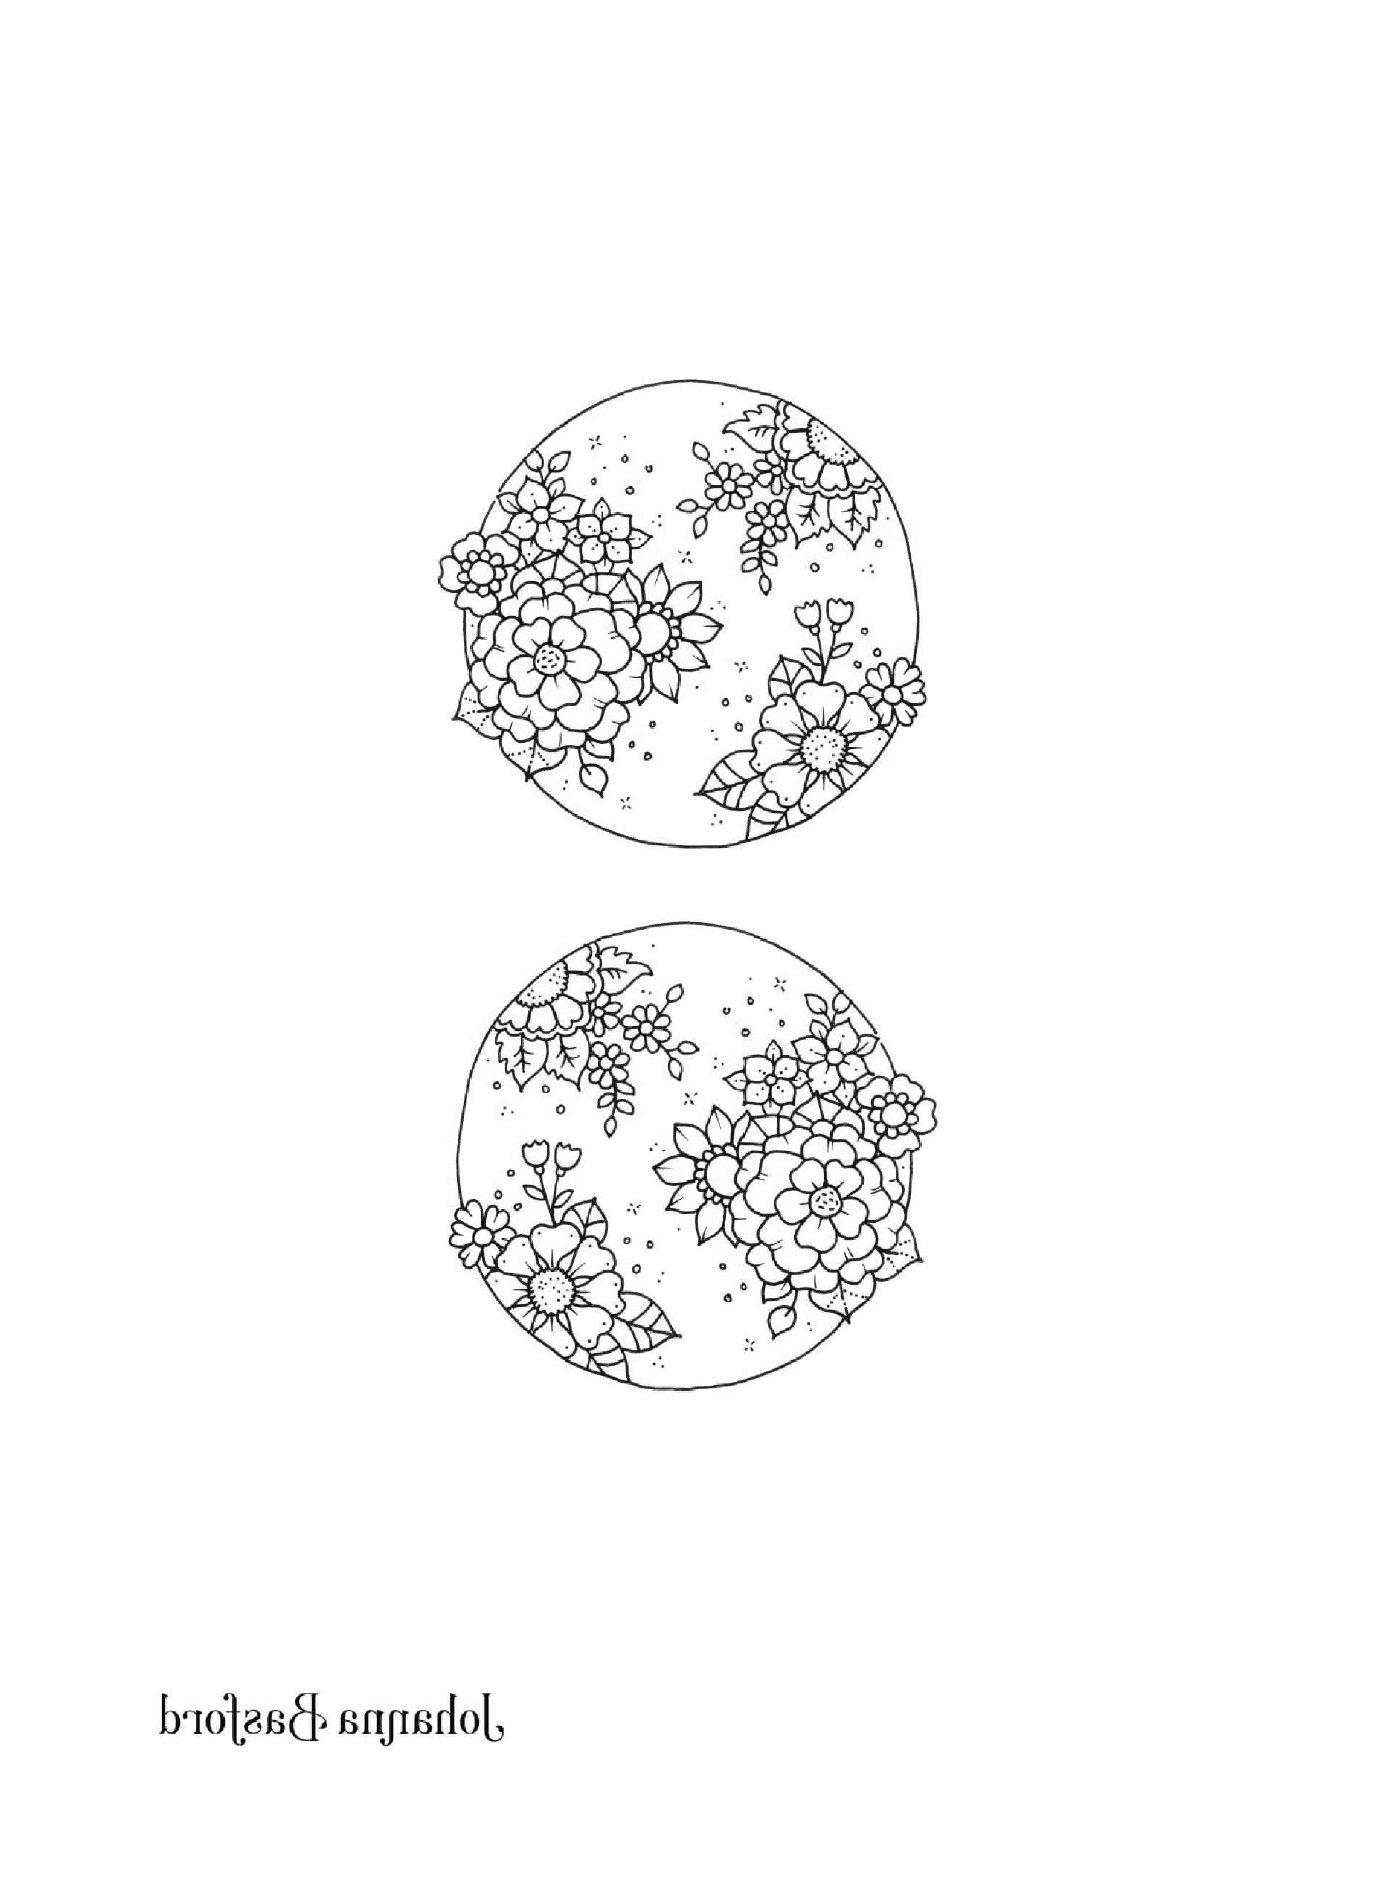   Deux dessins en noir et blanc d'un globe 